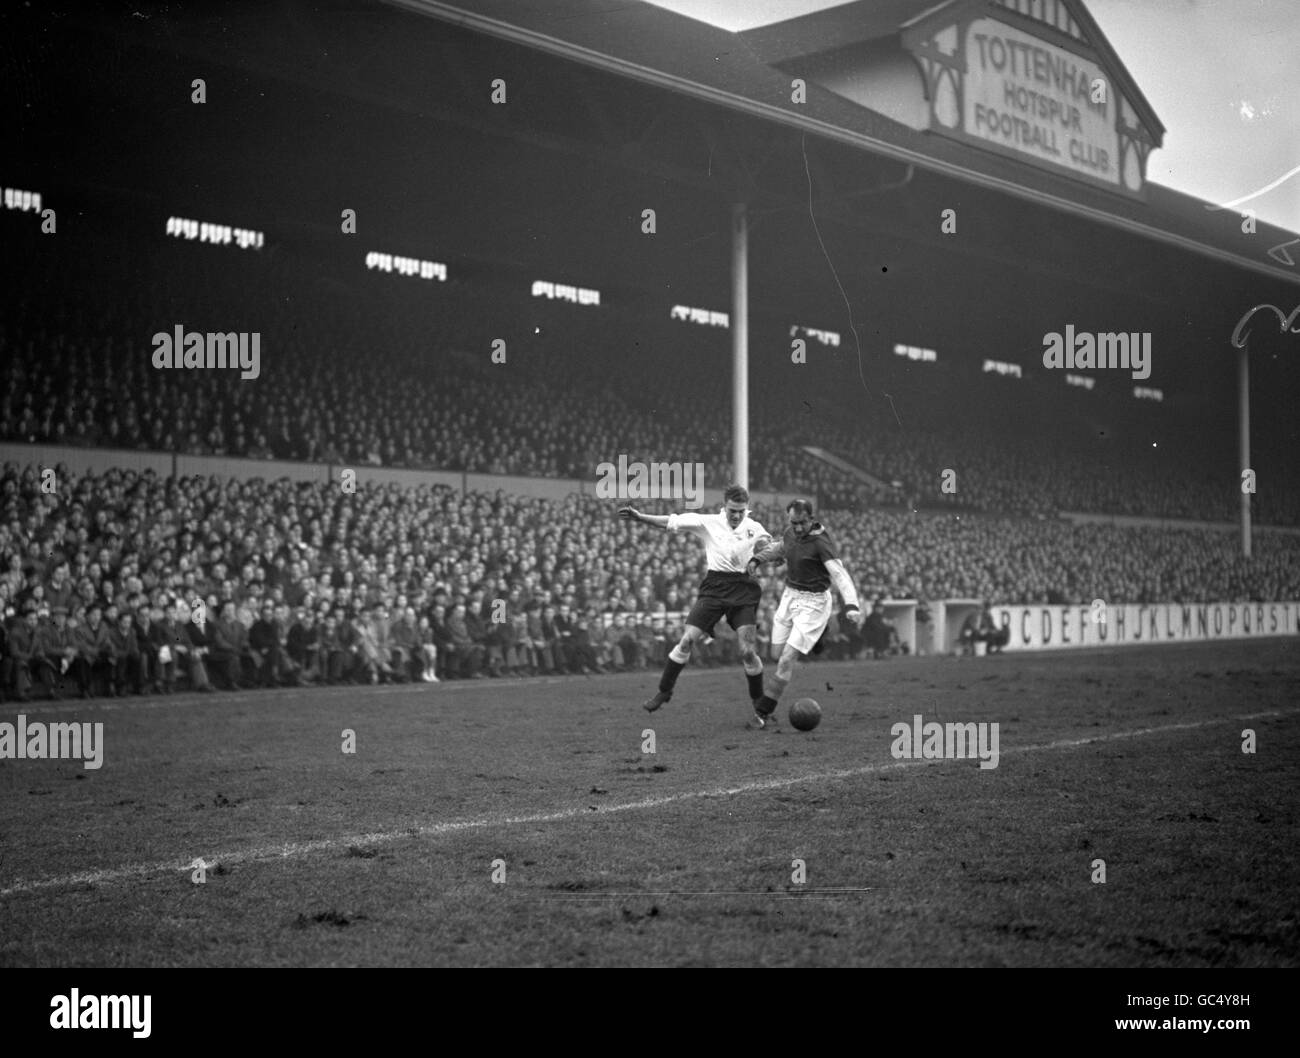 Calcio - Divisione uno - Tottenham Hotspur / Aston Villa - White Hart Lane - 1951. William 'Sonny' Walters di Spurs grovigli con Harry Parkes di Aston Villa (a destra) Foto Stock